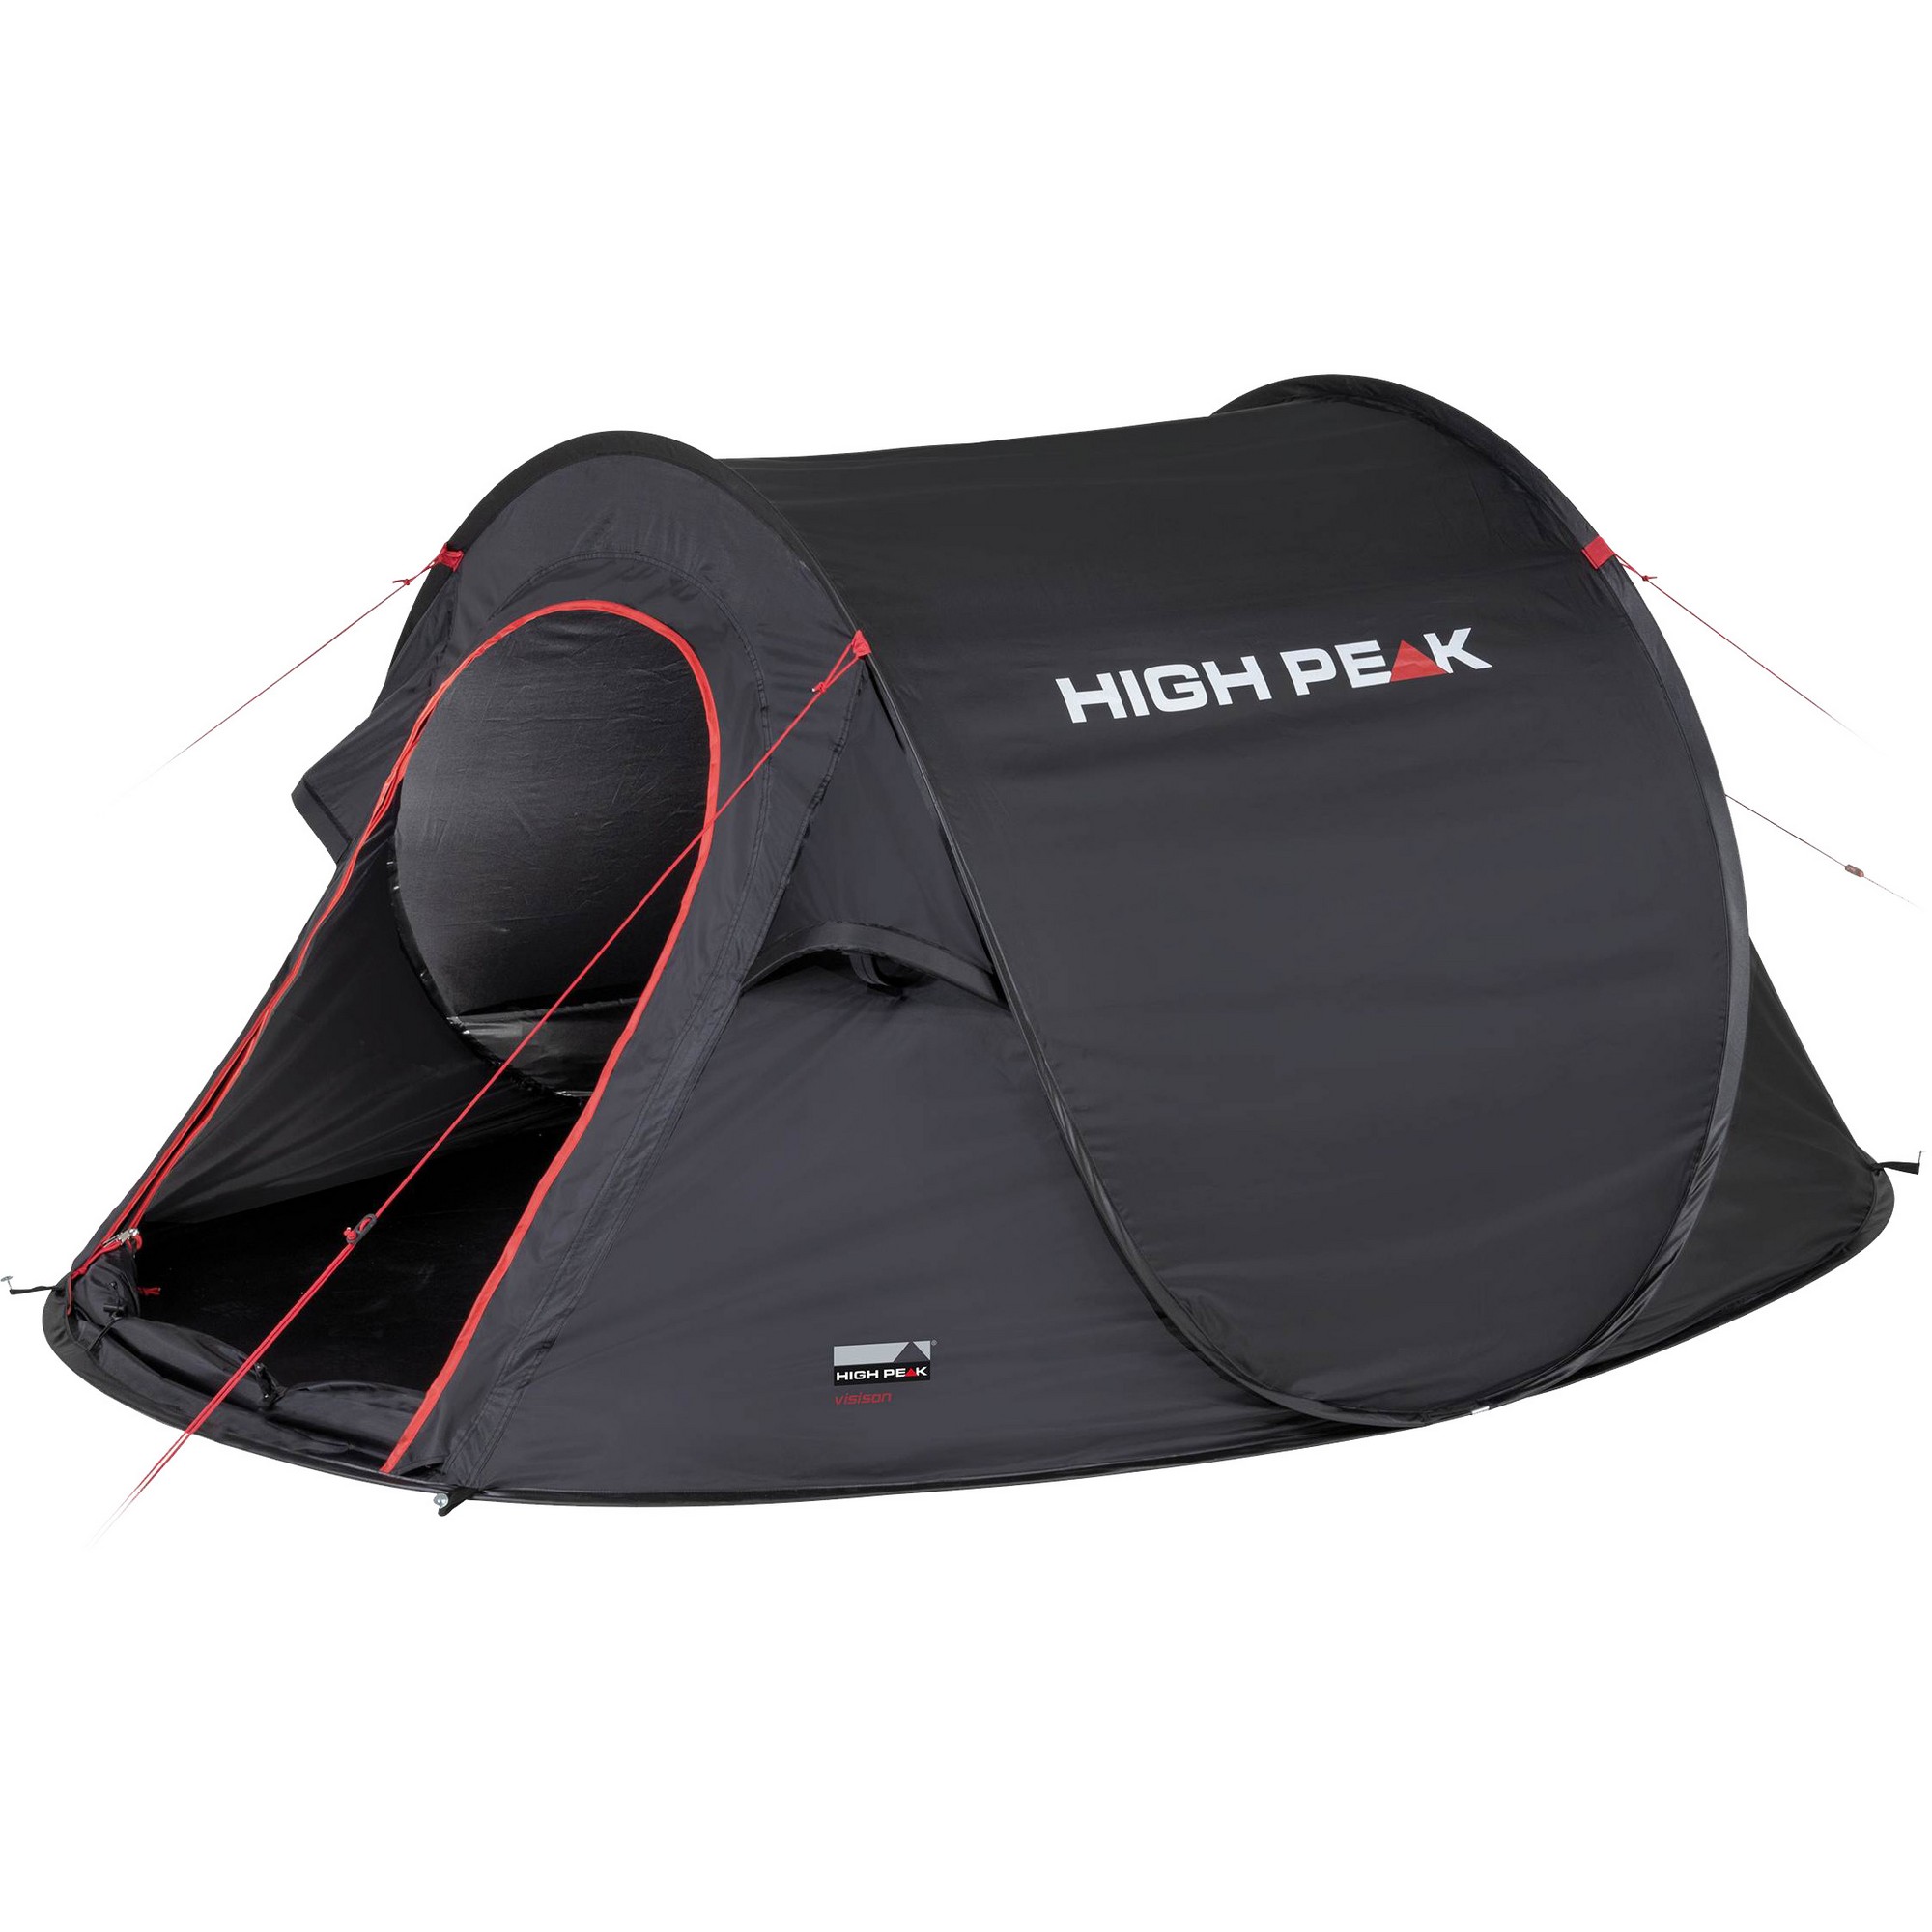 Fitness robot Kan weerstaan High Peak Vision 3 pop up tent black - Tenten